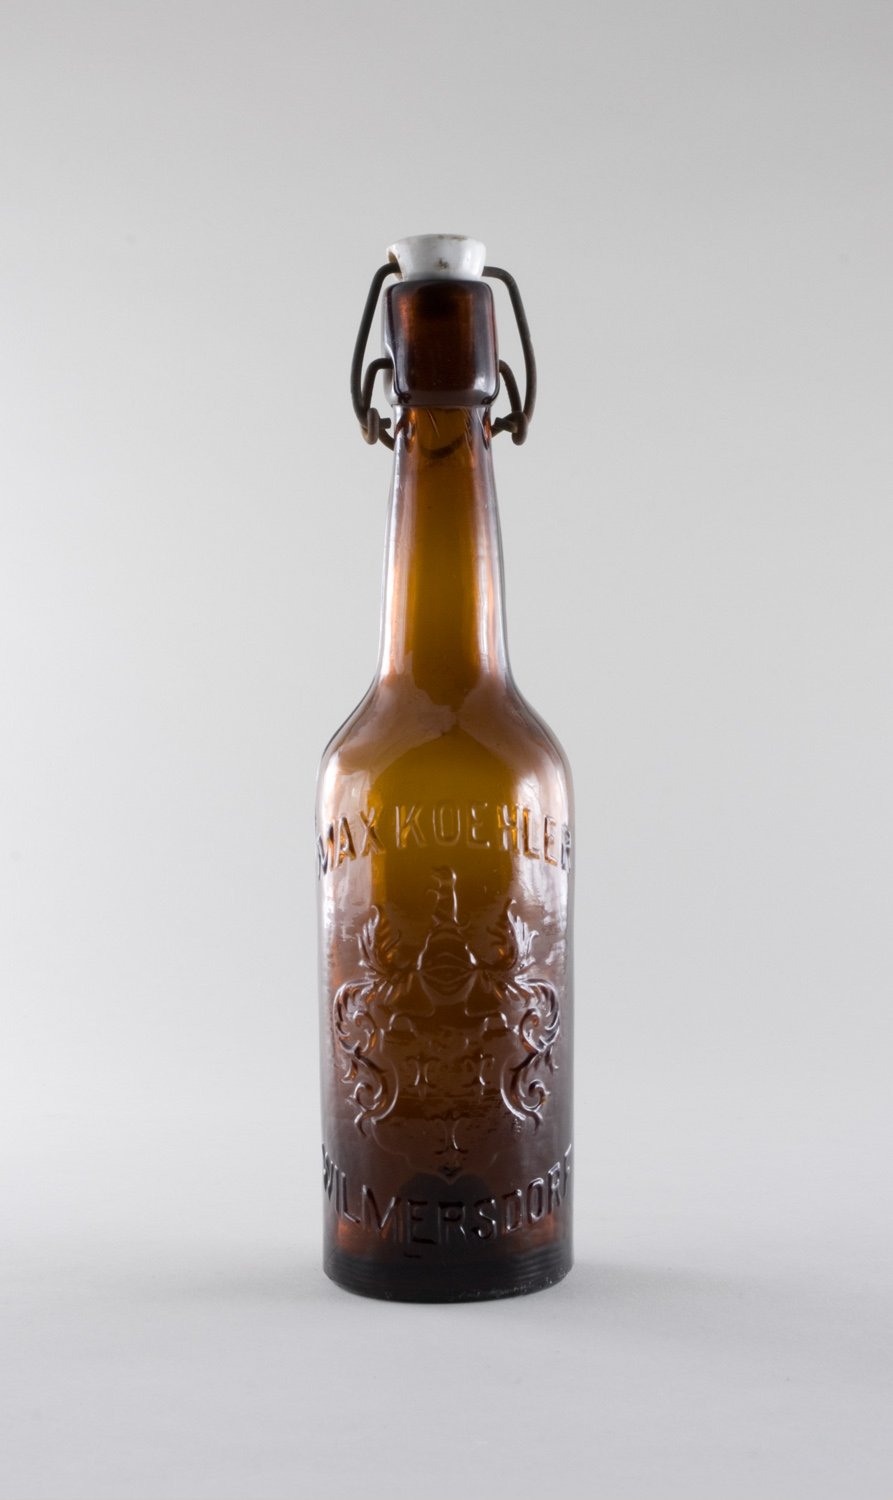 Bierflasche "Max Köhler Wilmersdorf", mit Bügelverschluss (Stiftung Domäne Dahlem - Landgut und Museum, Weiternutzung nur mit Genehmigung des Museums CC BY-NC-SA)